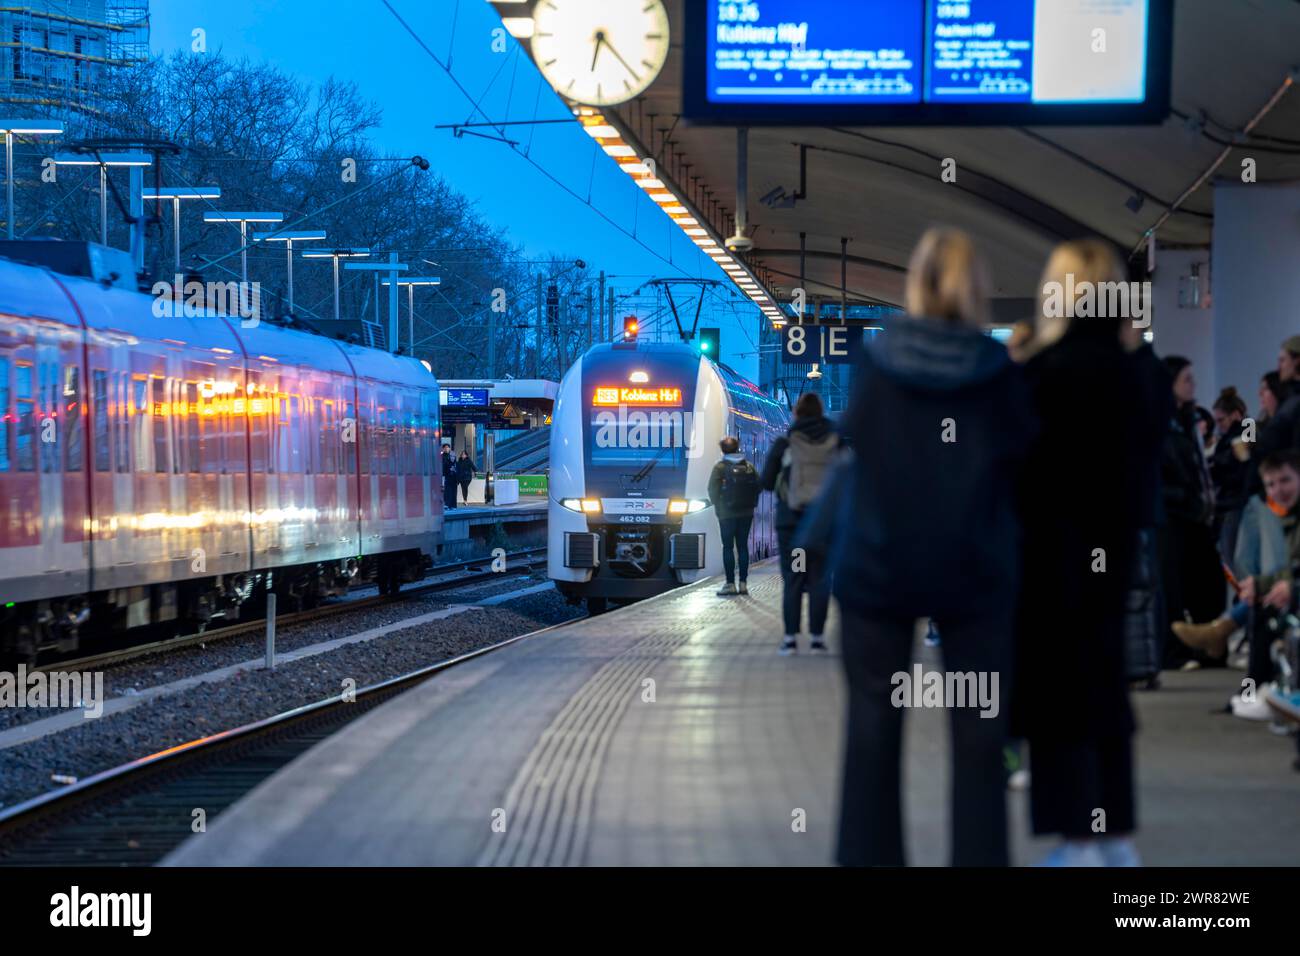 Stazione Colonia-Deutz, binario per treni locali, S-Bahn, treni regionali, Colonia, NRW, Germania Foto Stock